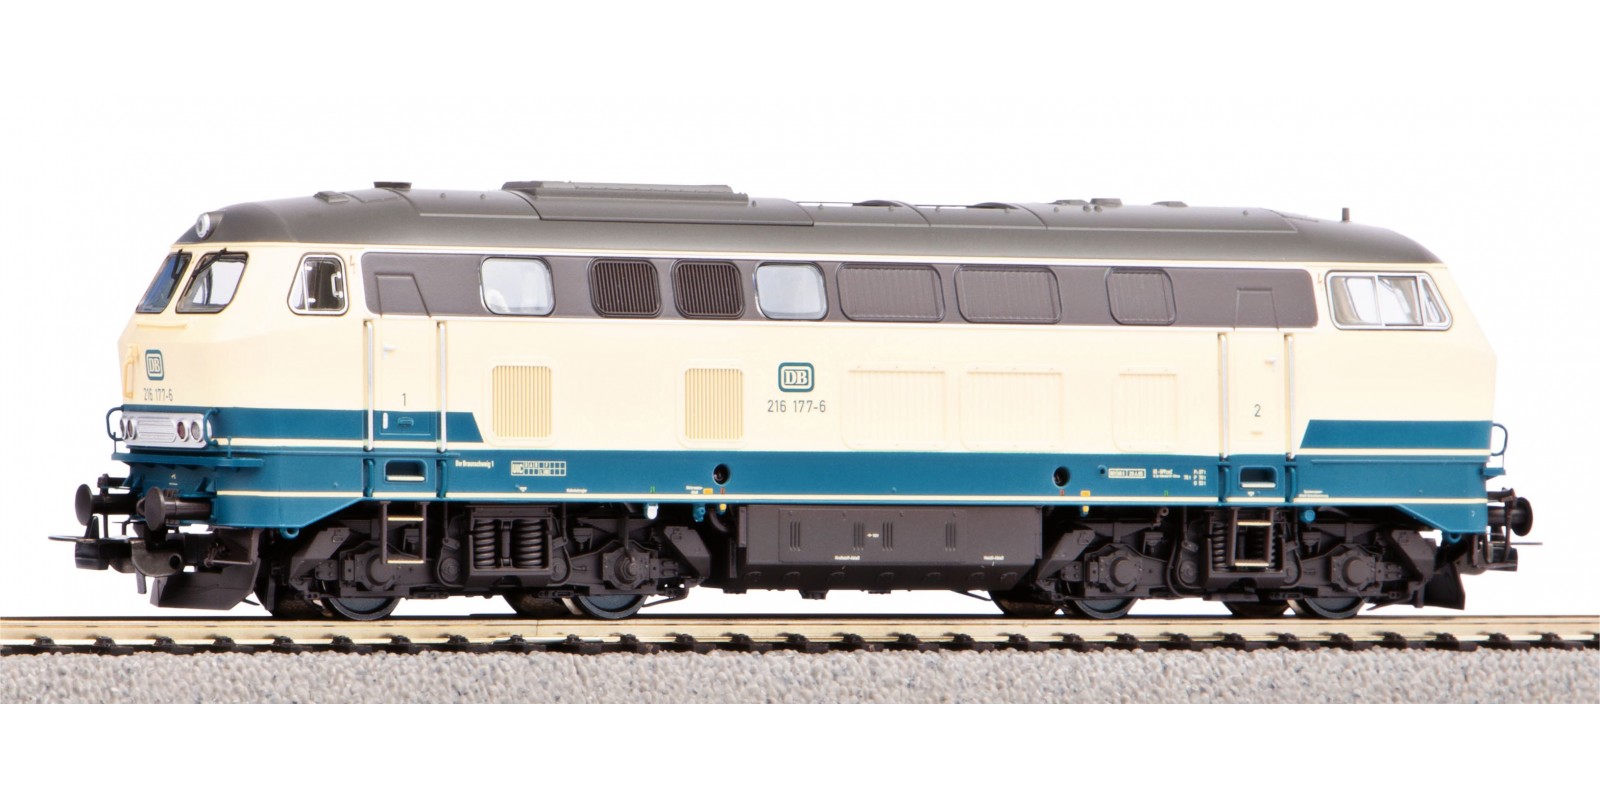 PI52411 Diesel locomotive class 216 beige-blue, era IV with sound